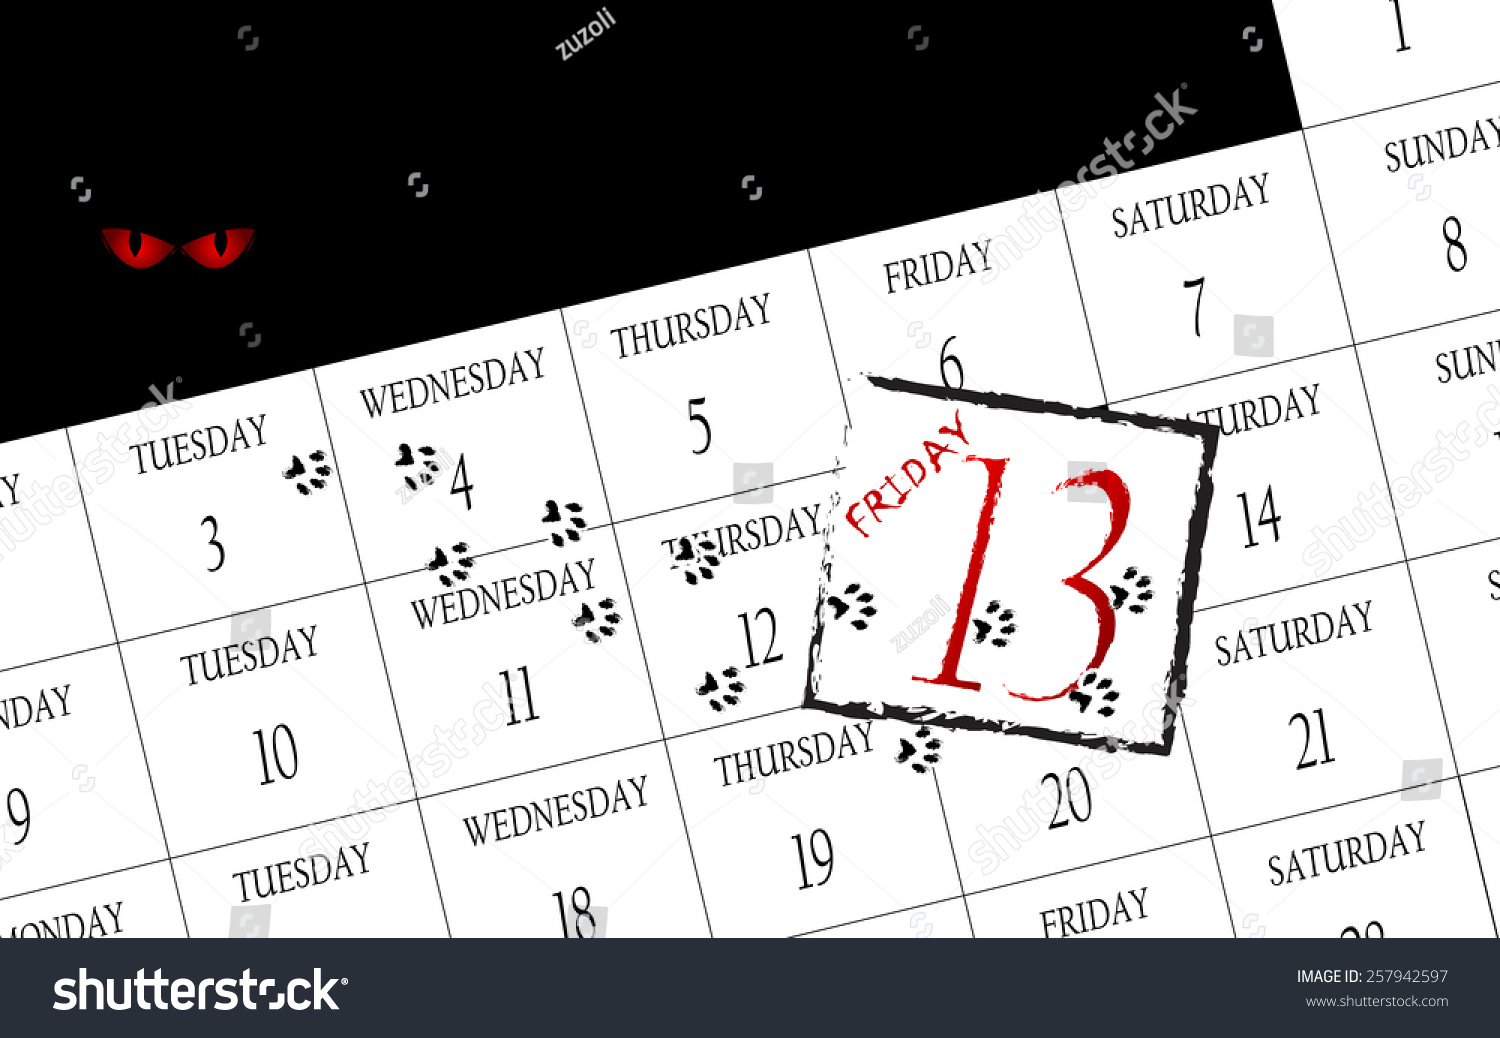 Friday 13th Calendar Stock Vector Illustration 257942597 Shutterstock